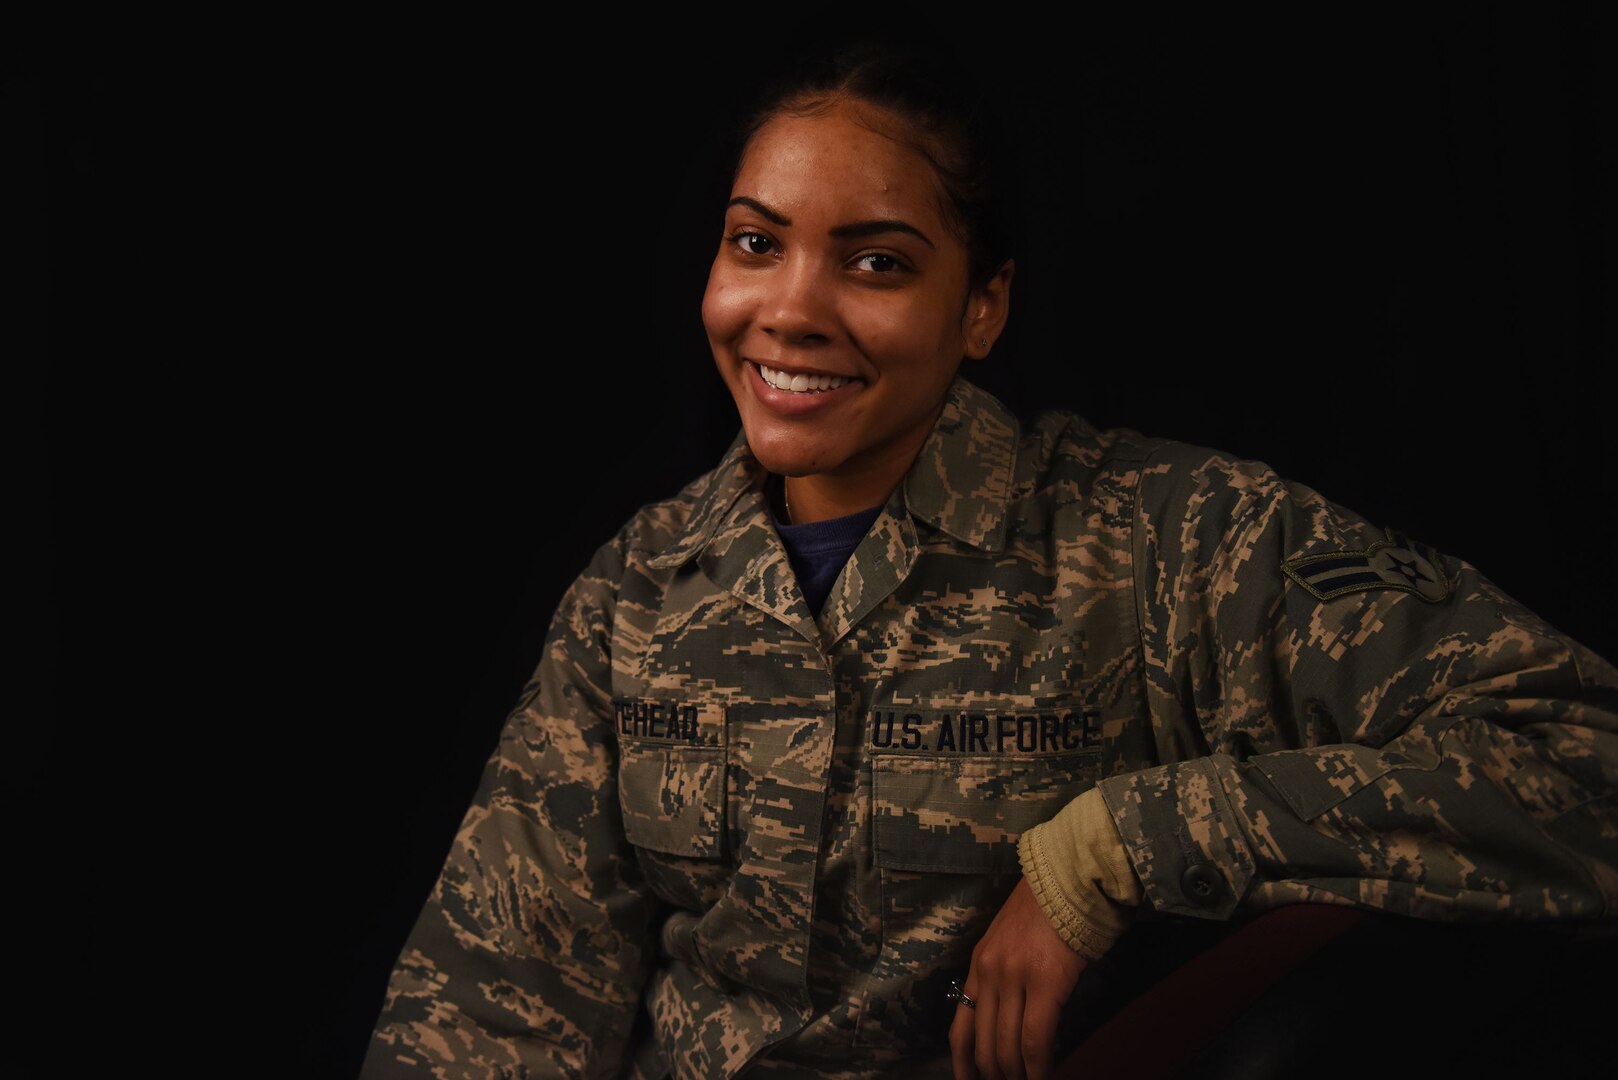 Female African American Soldier Series Against Dark Brown